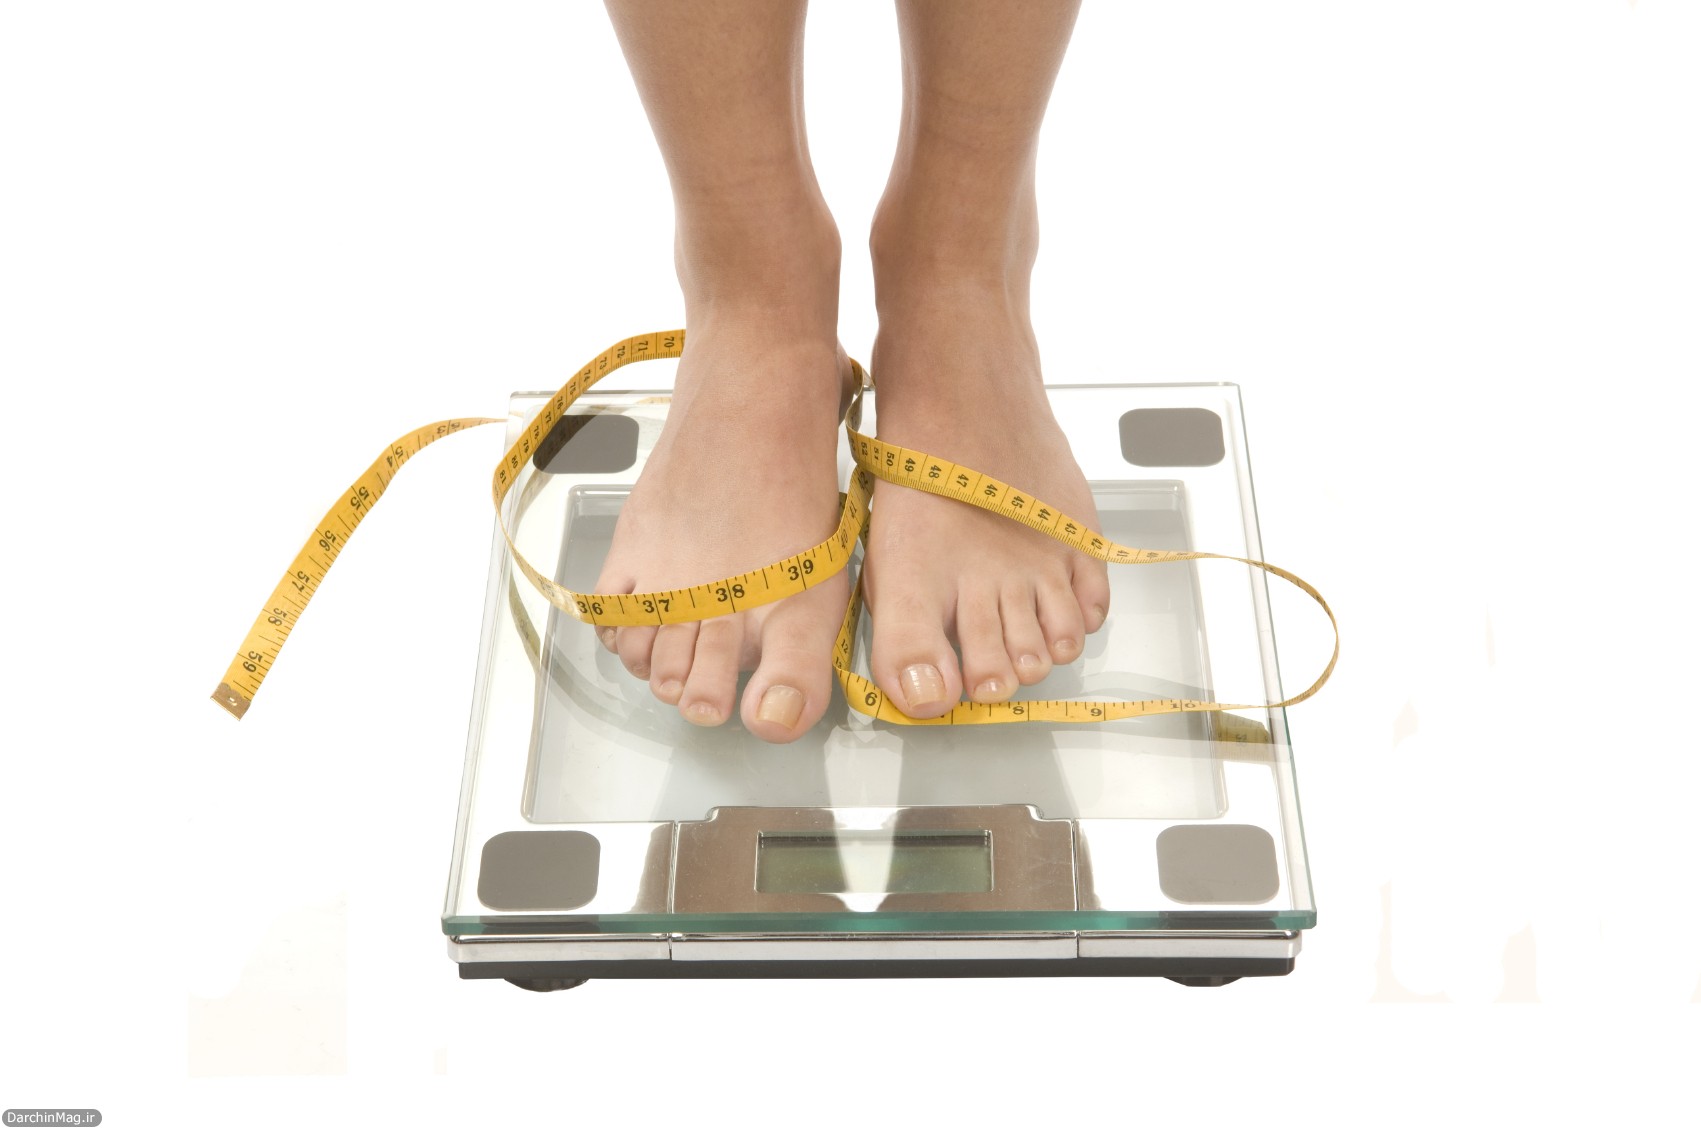 لاغری کاهش وزن اصولی کاهش وزن علل چاقی روش های کاهش وزن راه های کاهش وزن درمان چاقی   